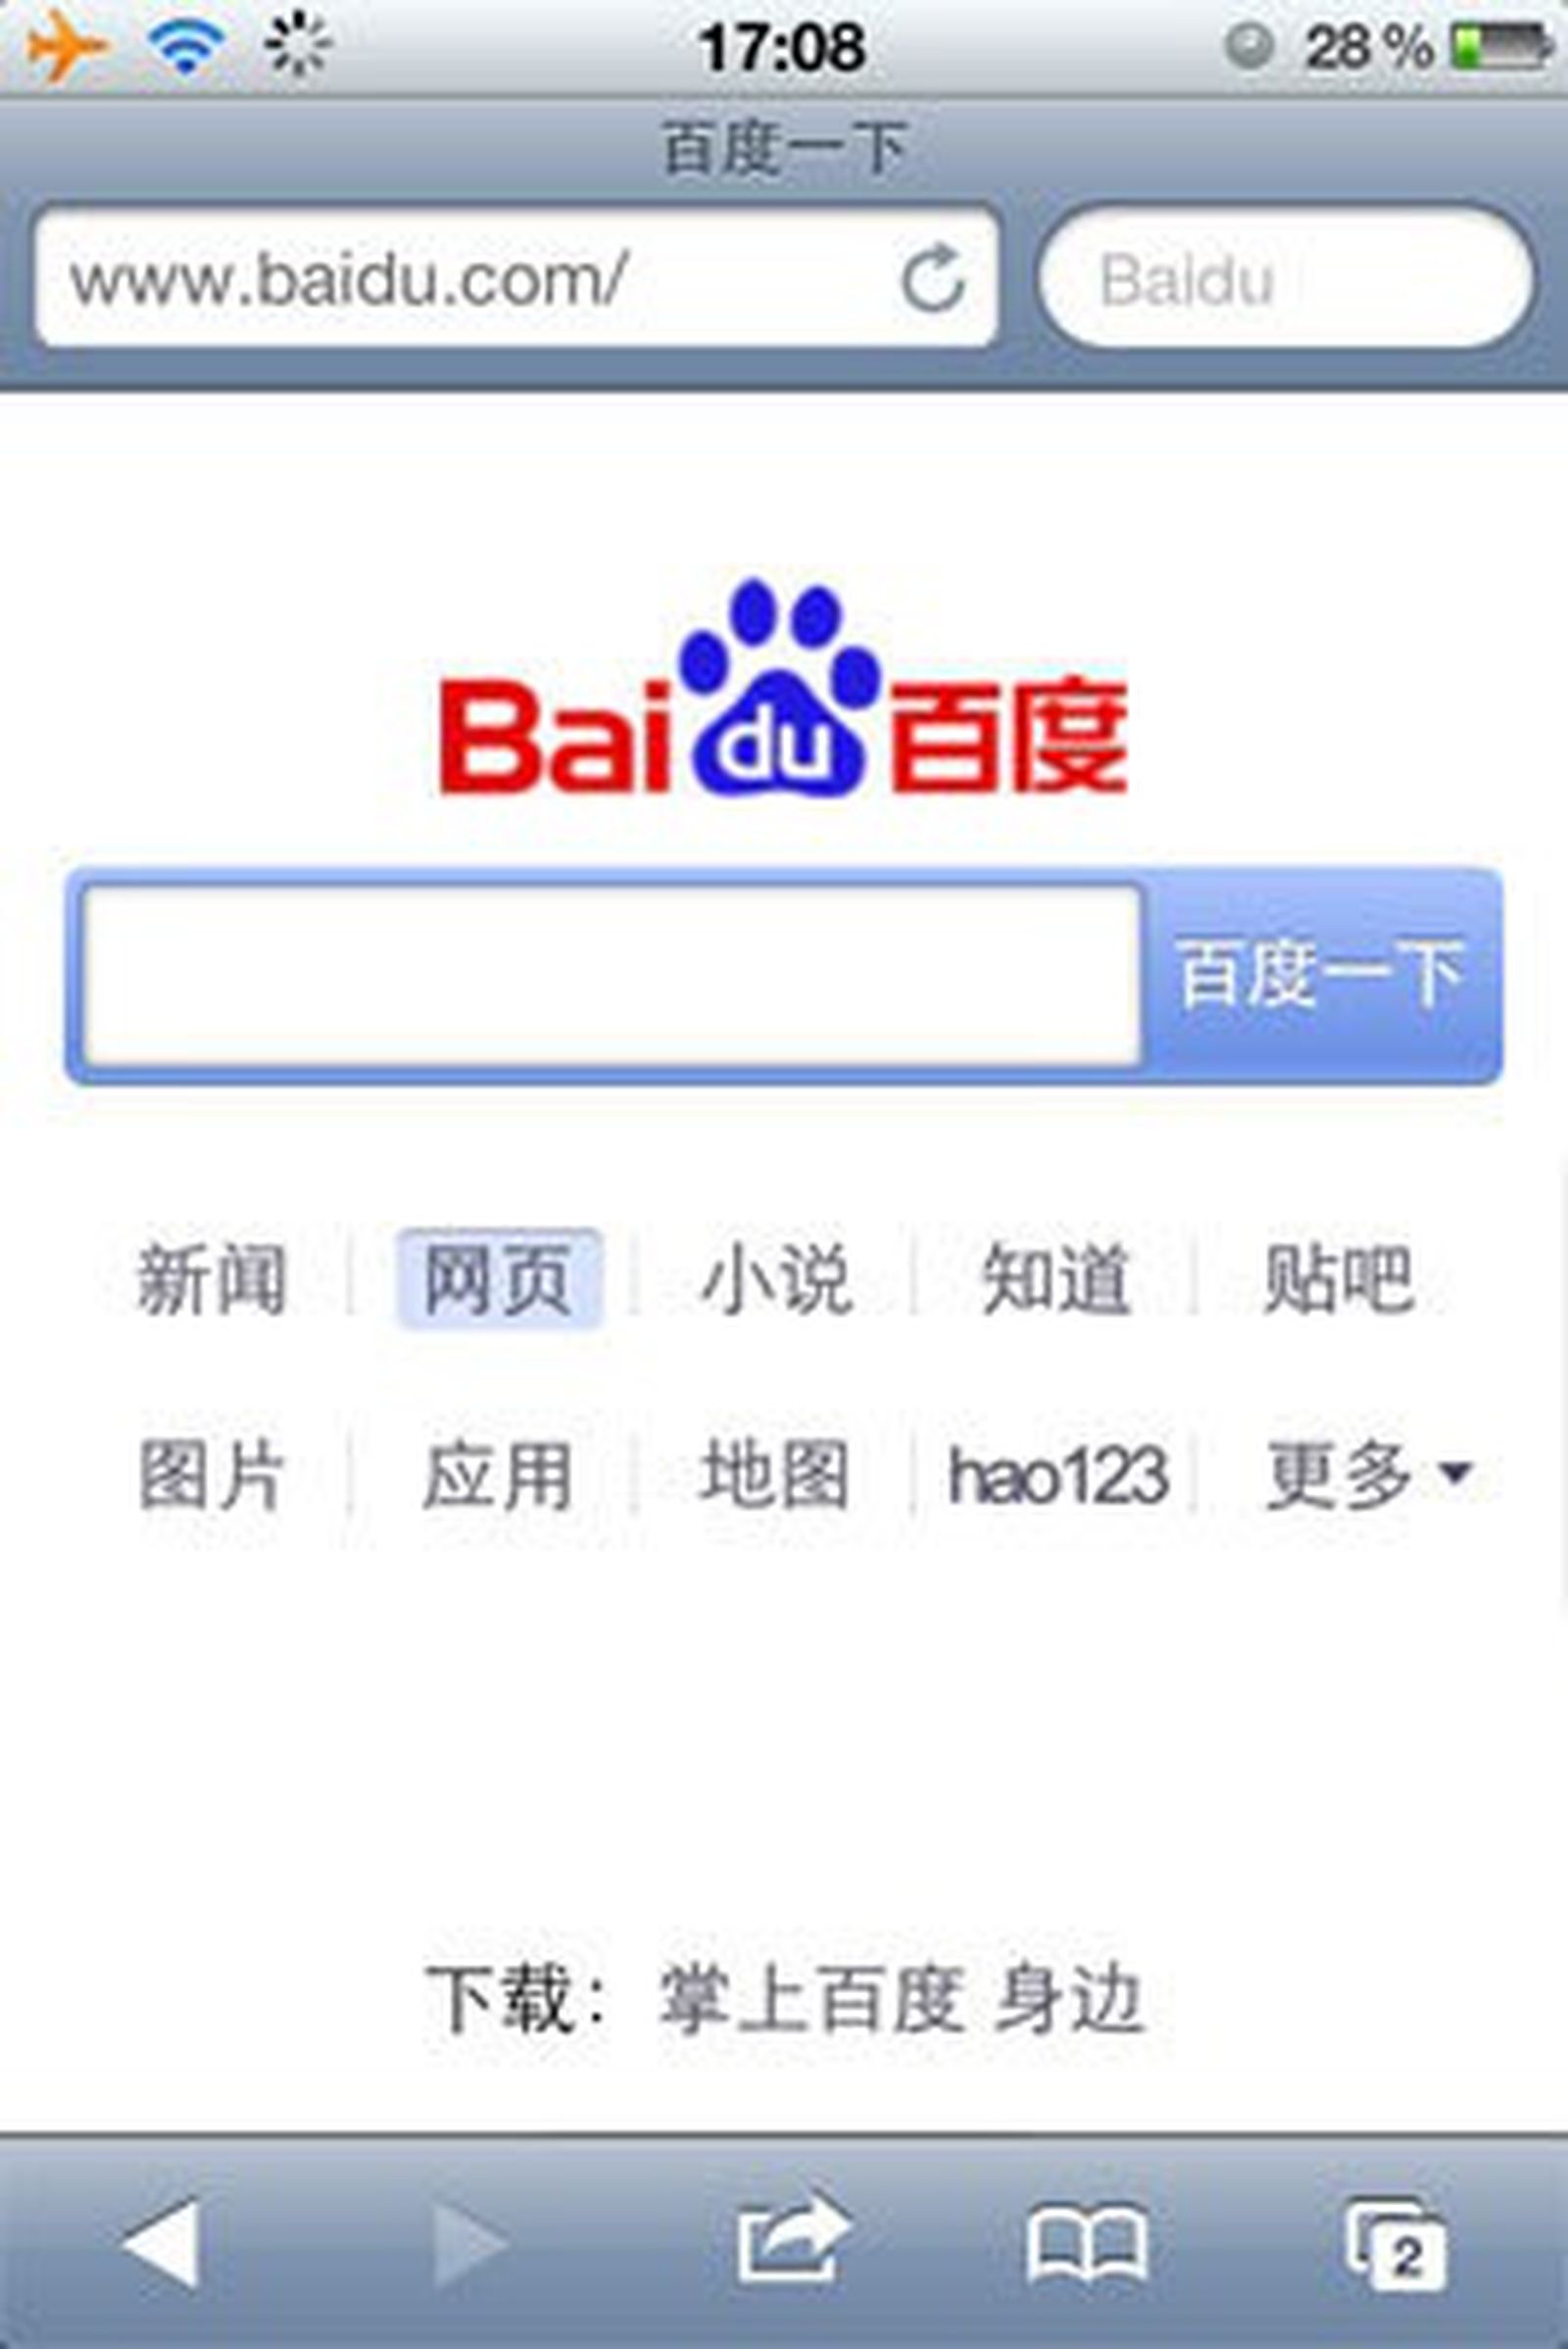 Baidu поисковая. Baidu. Байду китайский Поисковик. Baidu.com. Поисковая система Китая baidu.